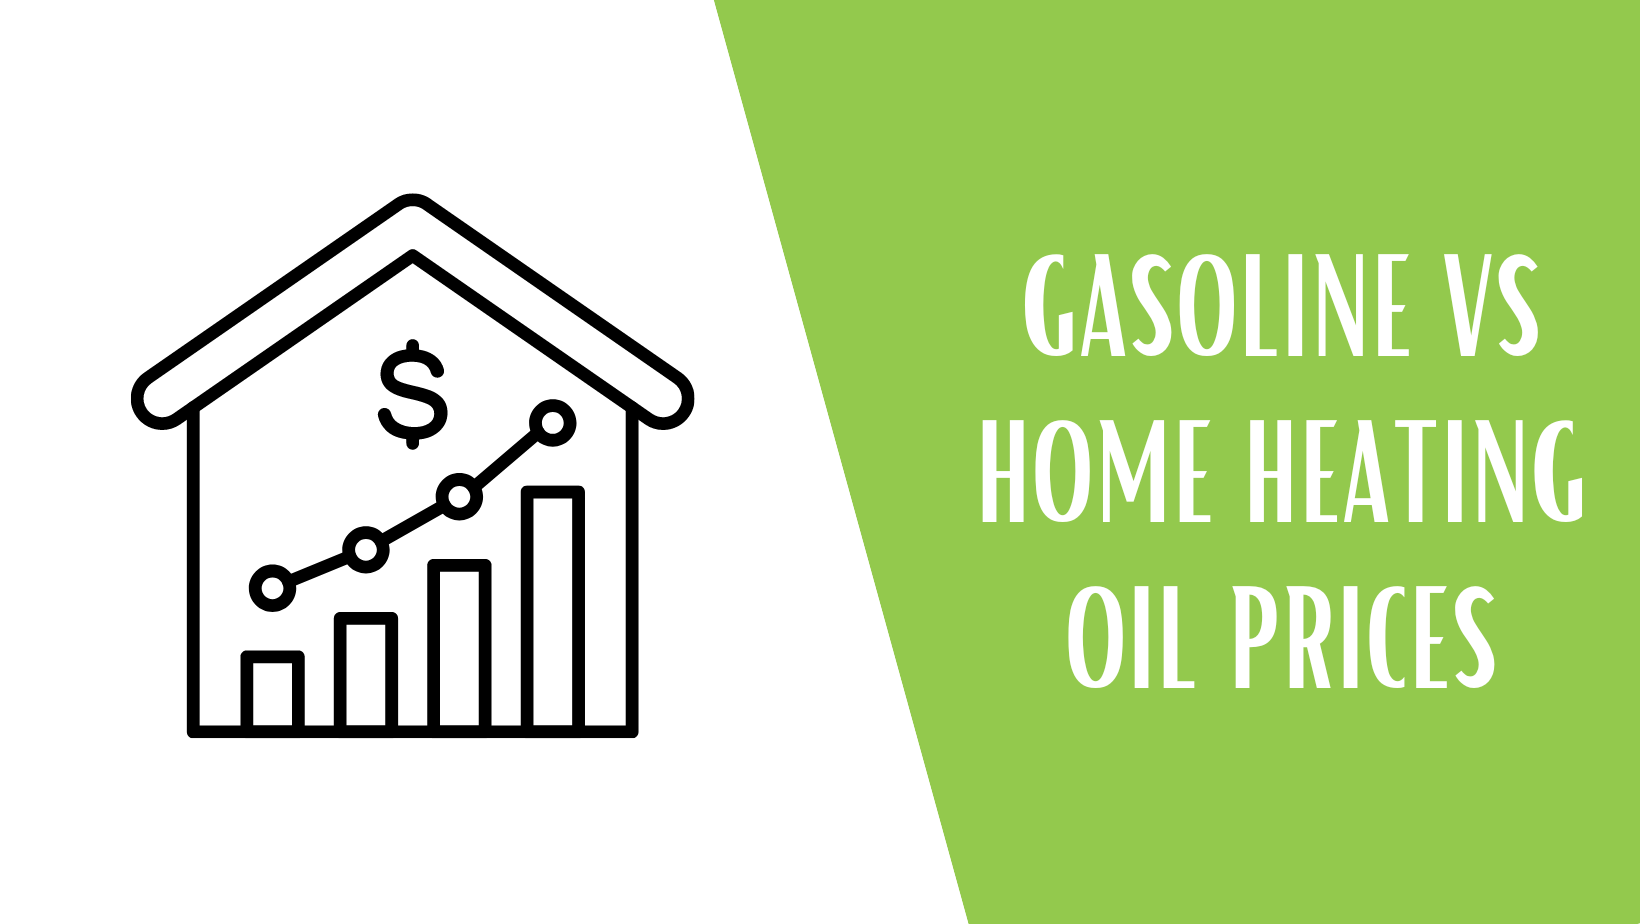 Gas vs oil prices